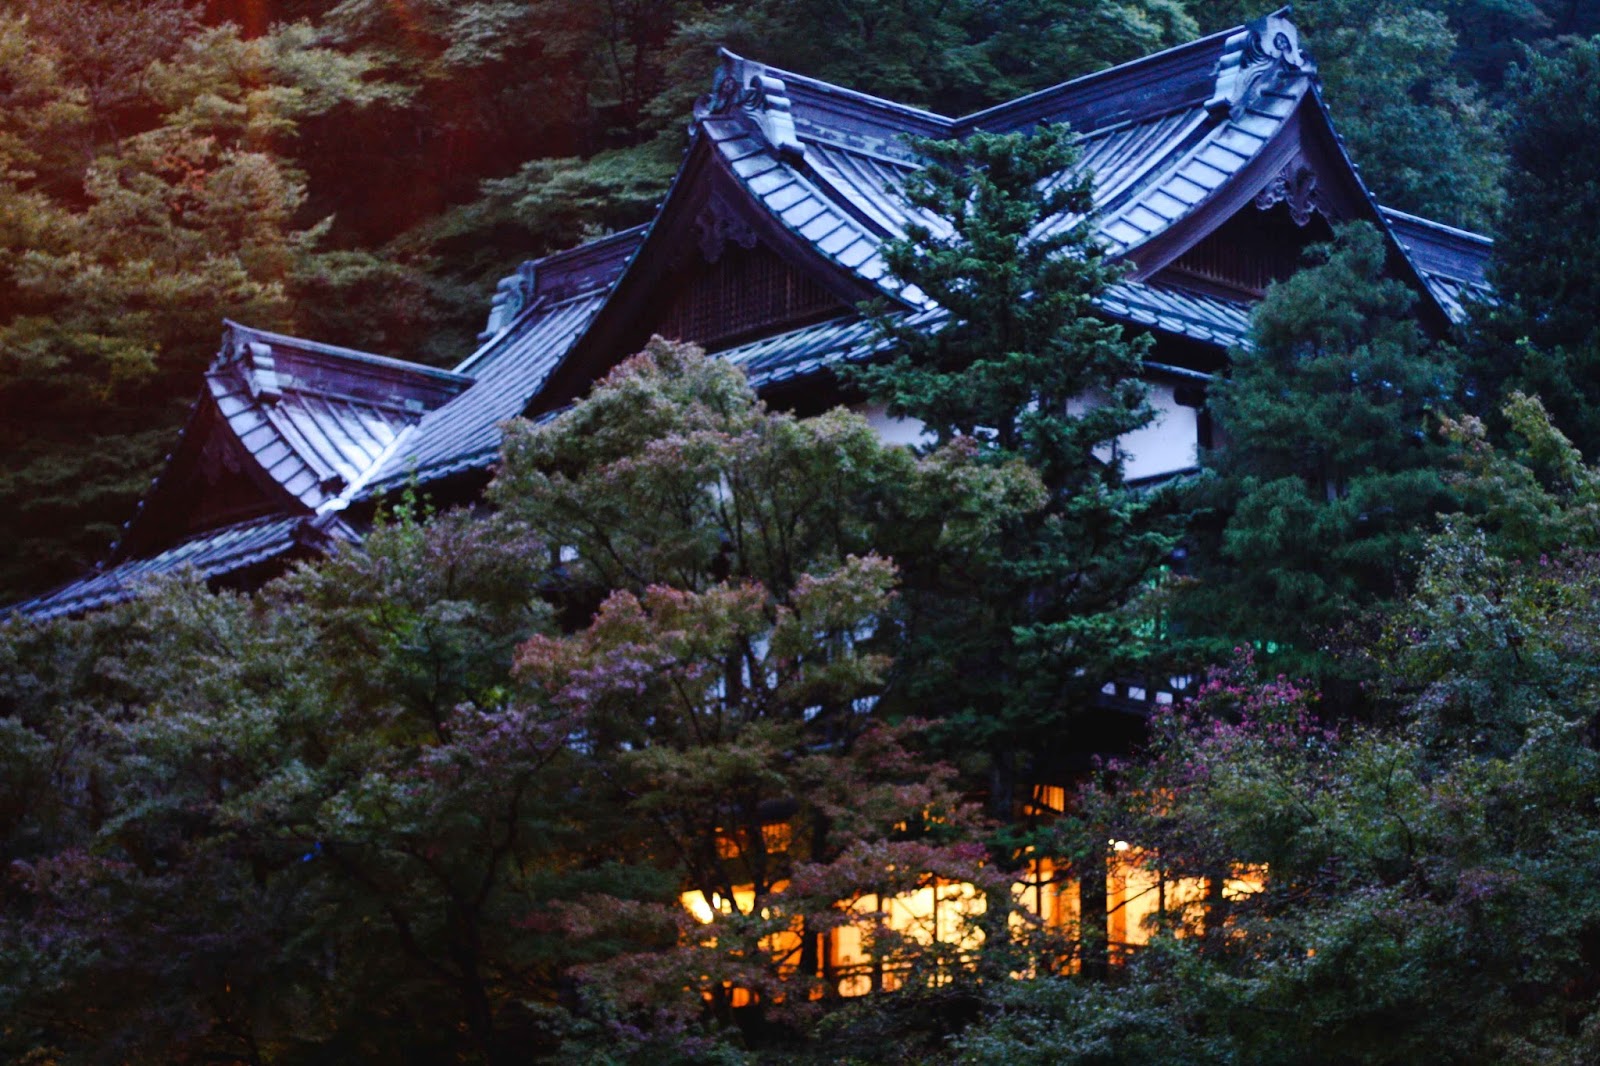 Retour en photos sur mon voyage au Japon #2 : Hakone